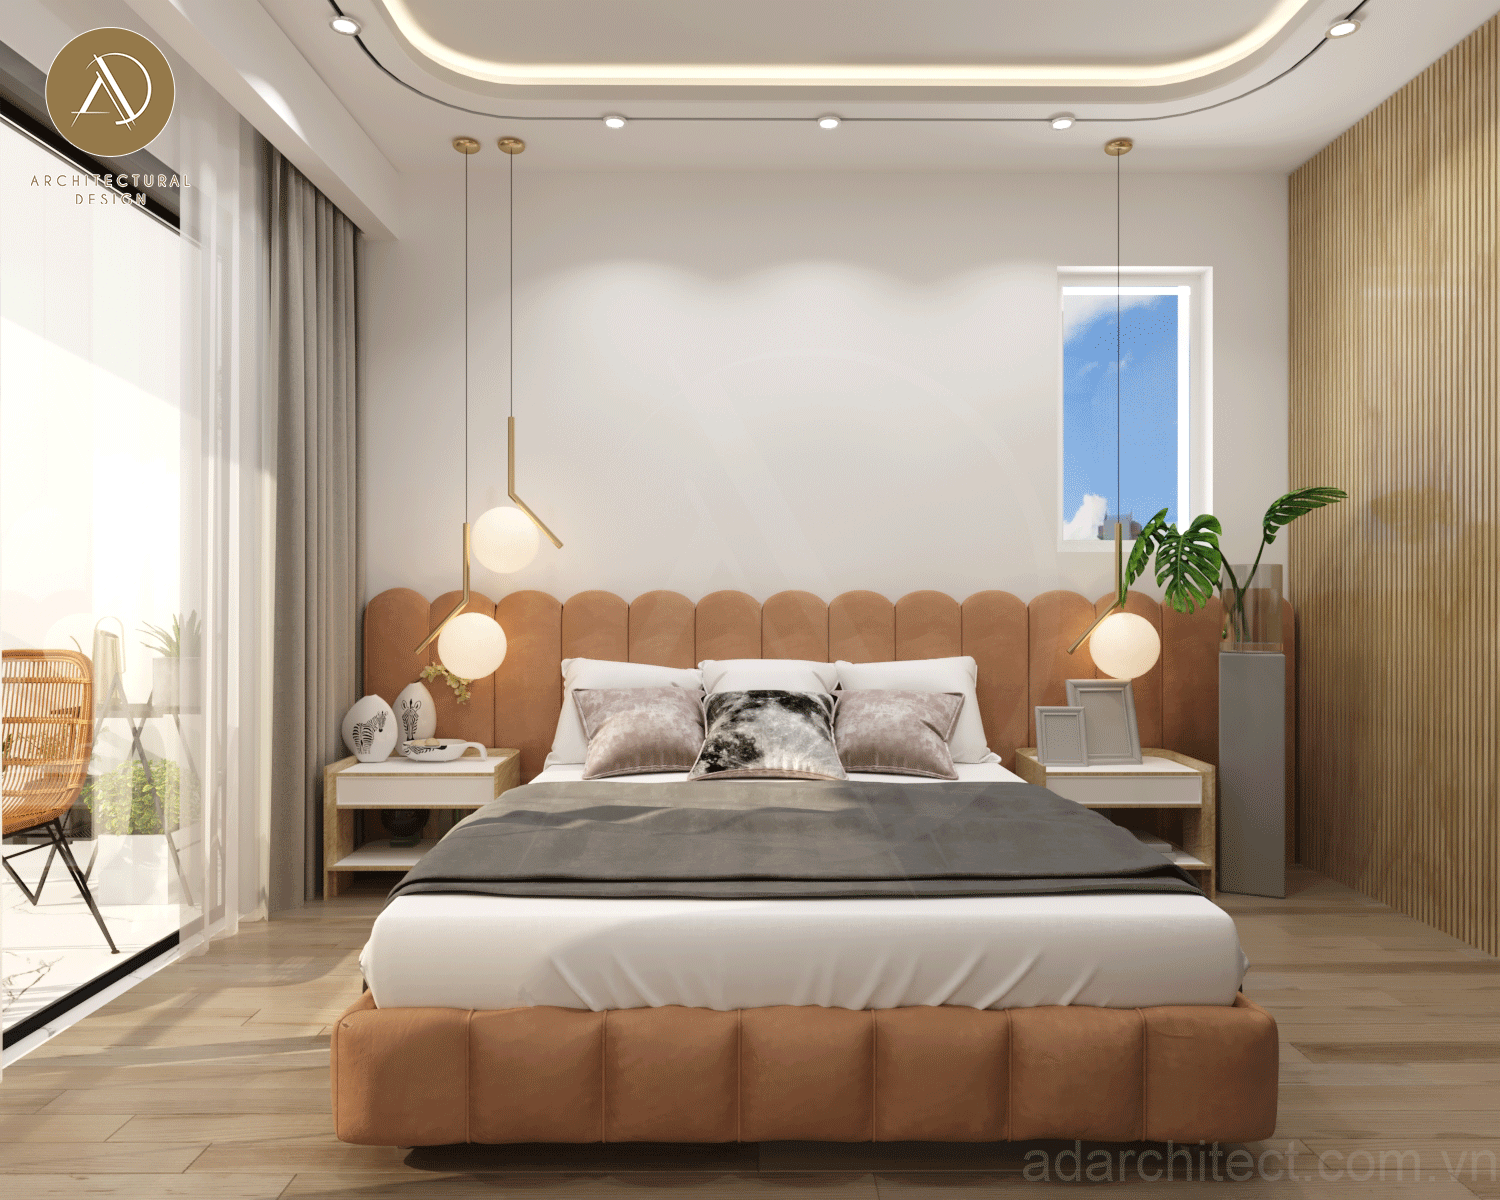 thiết kế phòng ngủ đẹp có đèn thả trần đơn giản, độc đáo mang đến cảm giác ấm áp